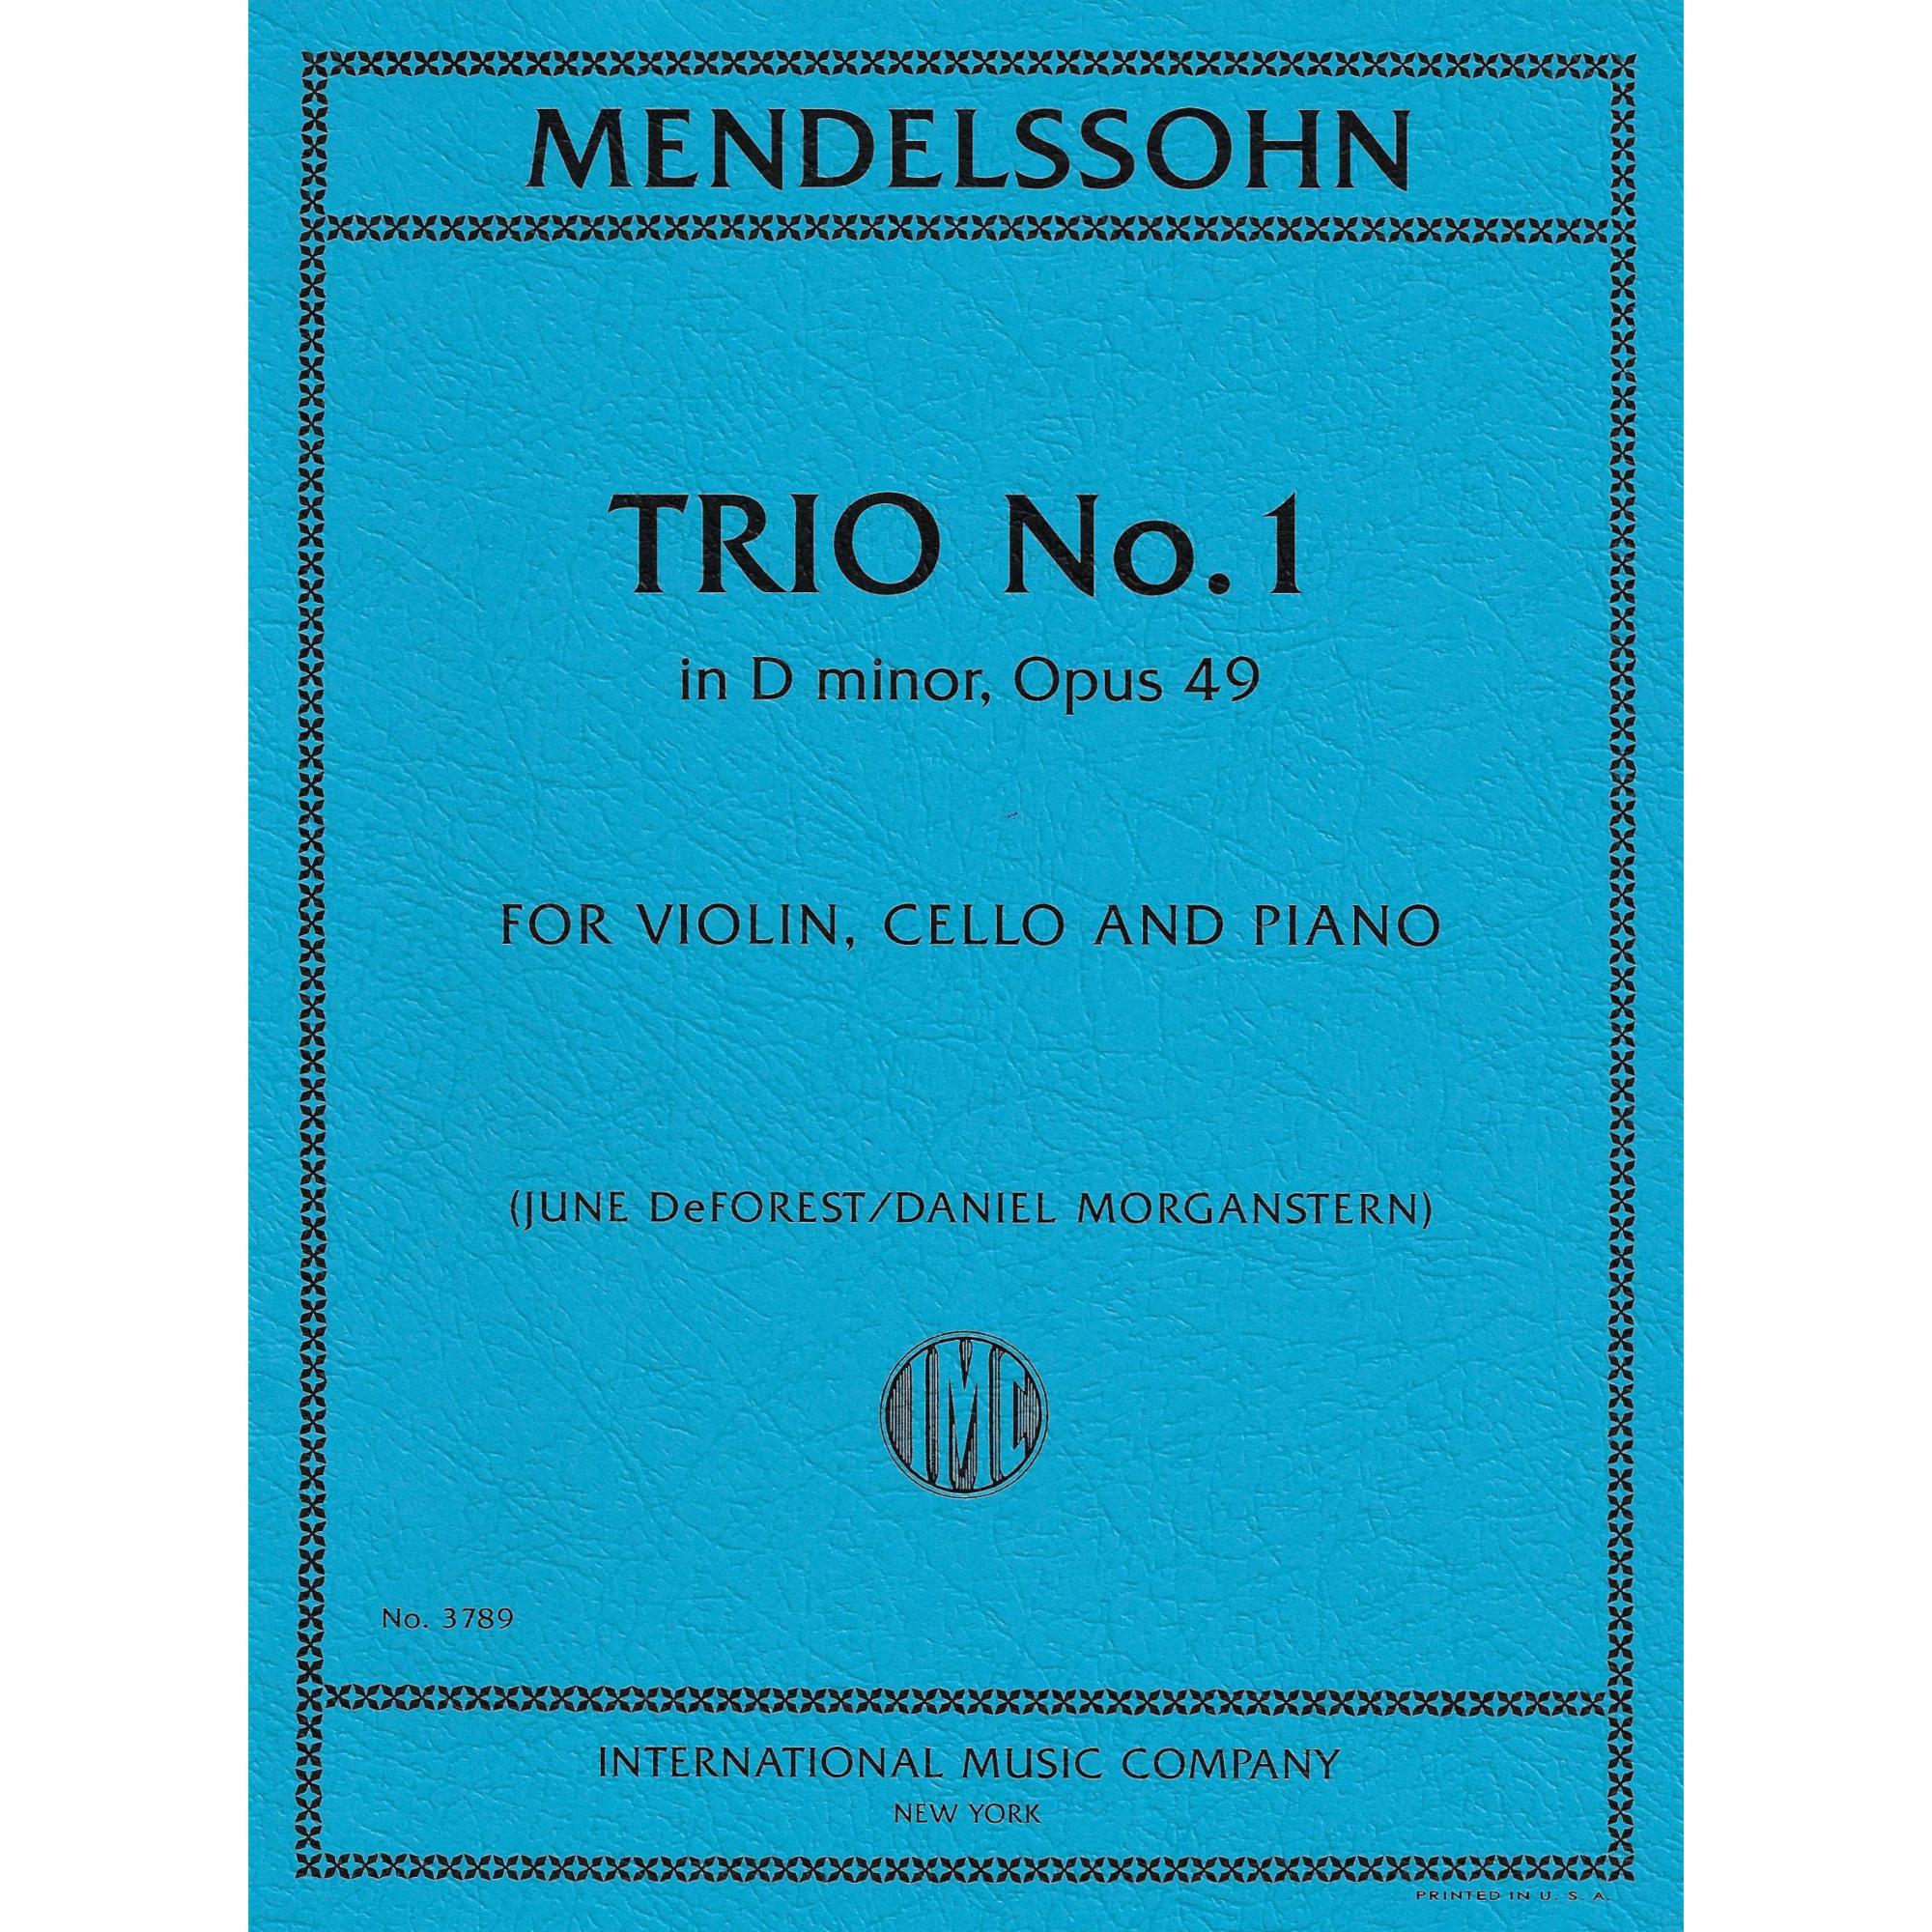 Mendelssohn -- Trio No. 1 in D Minor, Op. 49 for Violin, Cello, and Piano